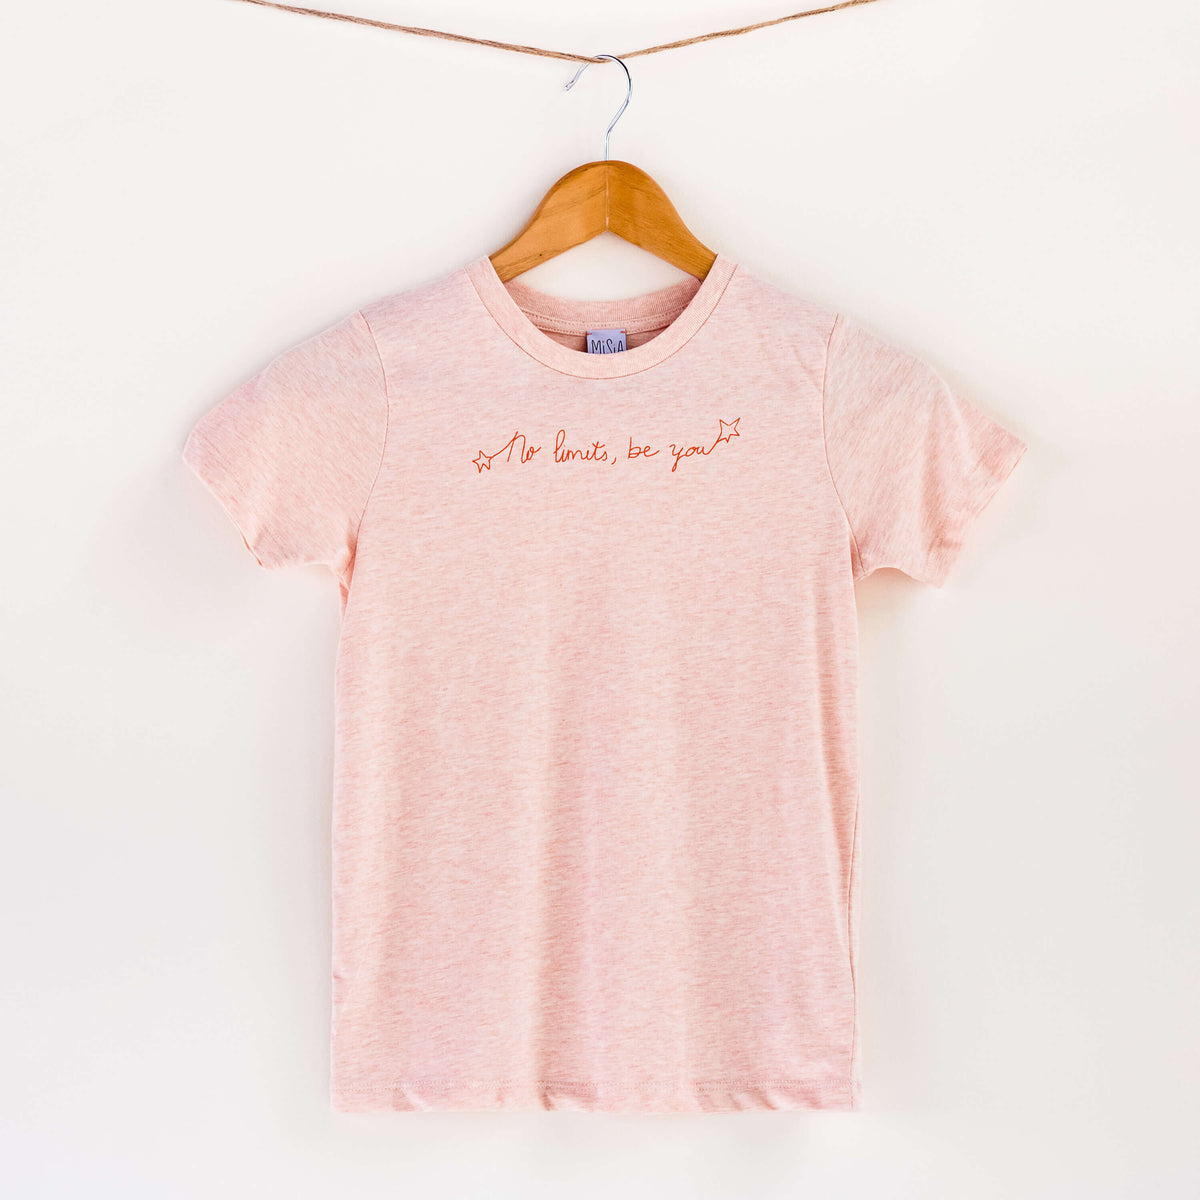 Camiseta rosa de algodón orgánico para niños, estampado a mano con tintas ecológicas. Texto estampado en color naranja. Modelo unisex.